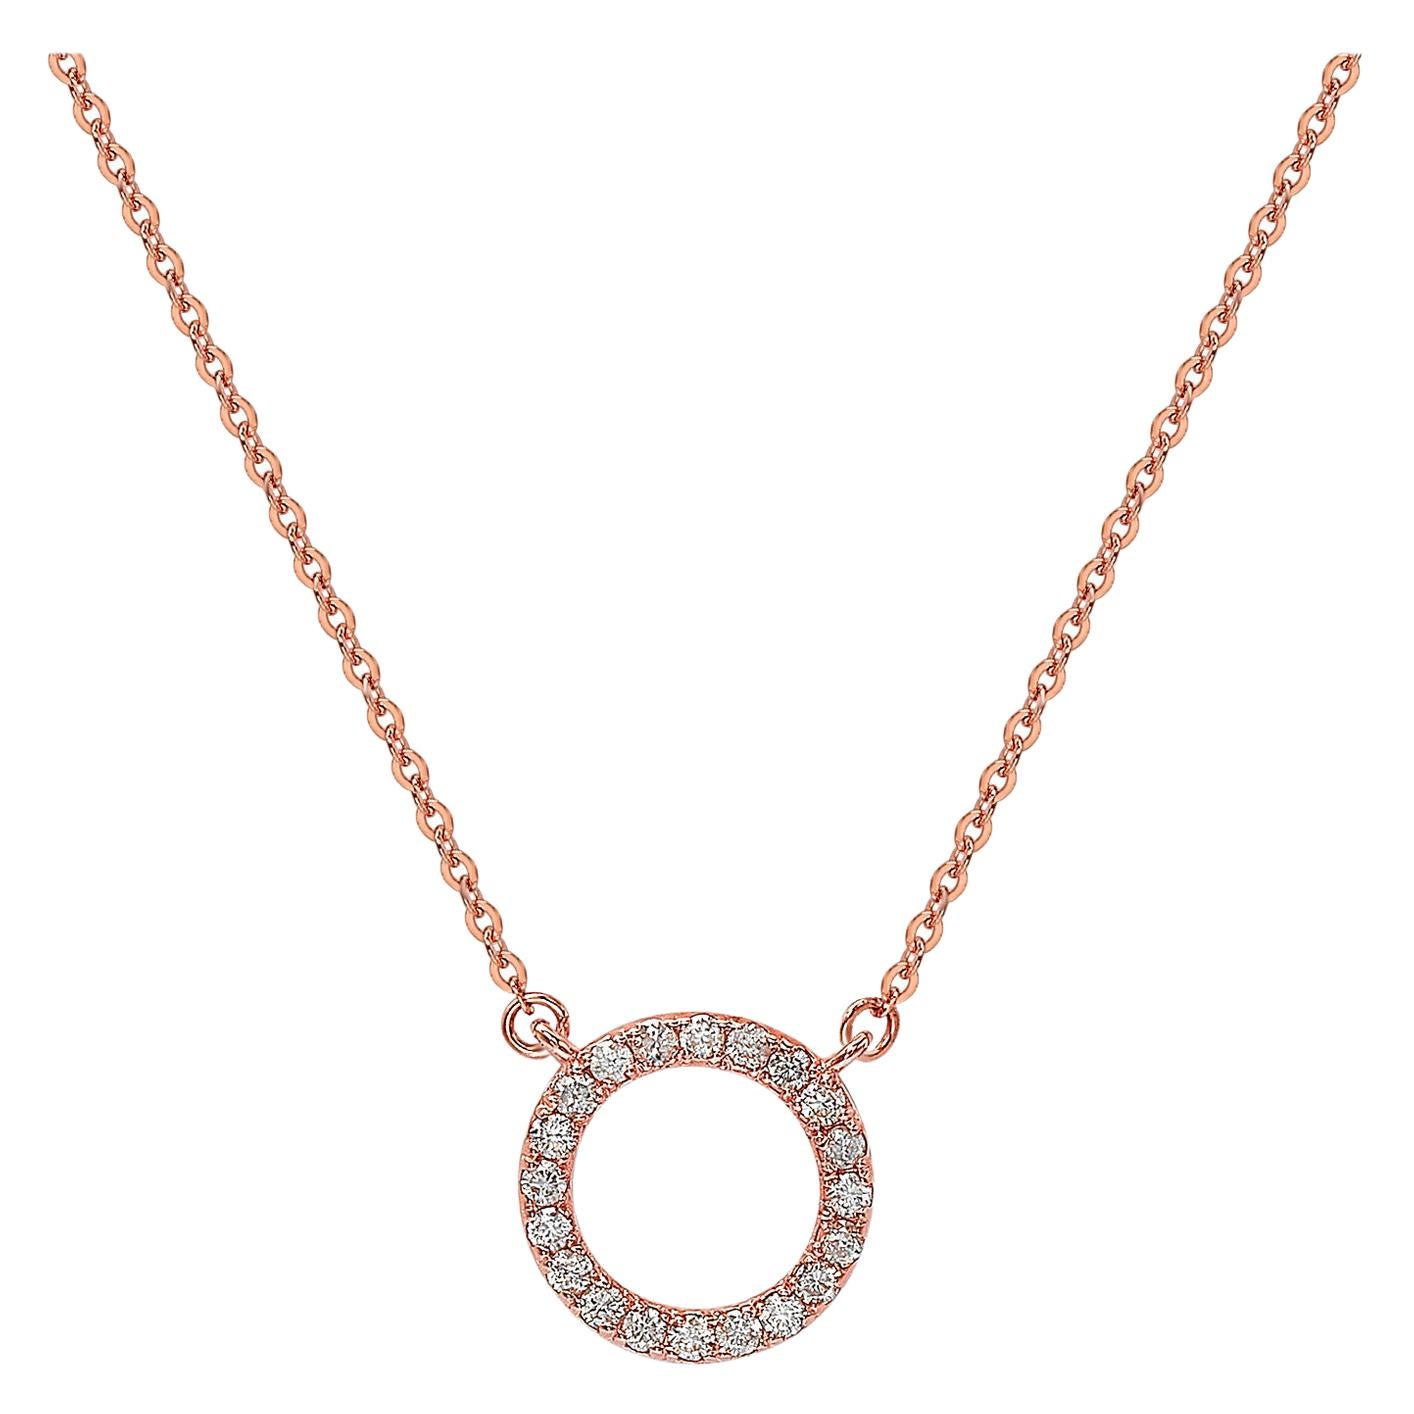 Suzy Levian Collier circulaire en or rose 14 carats avec diamants blancs